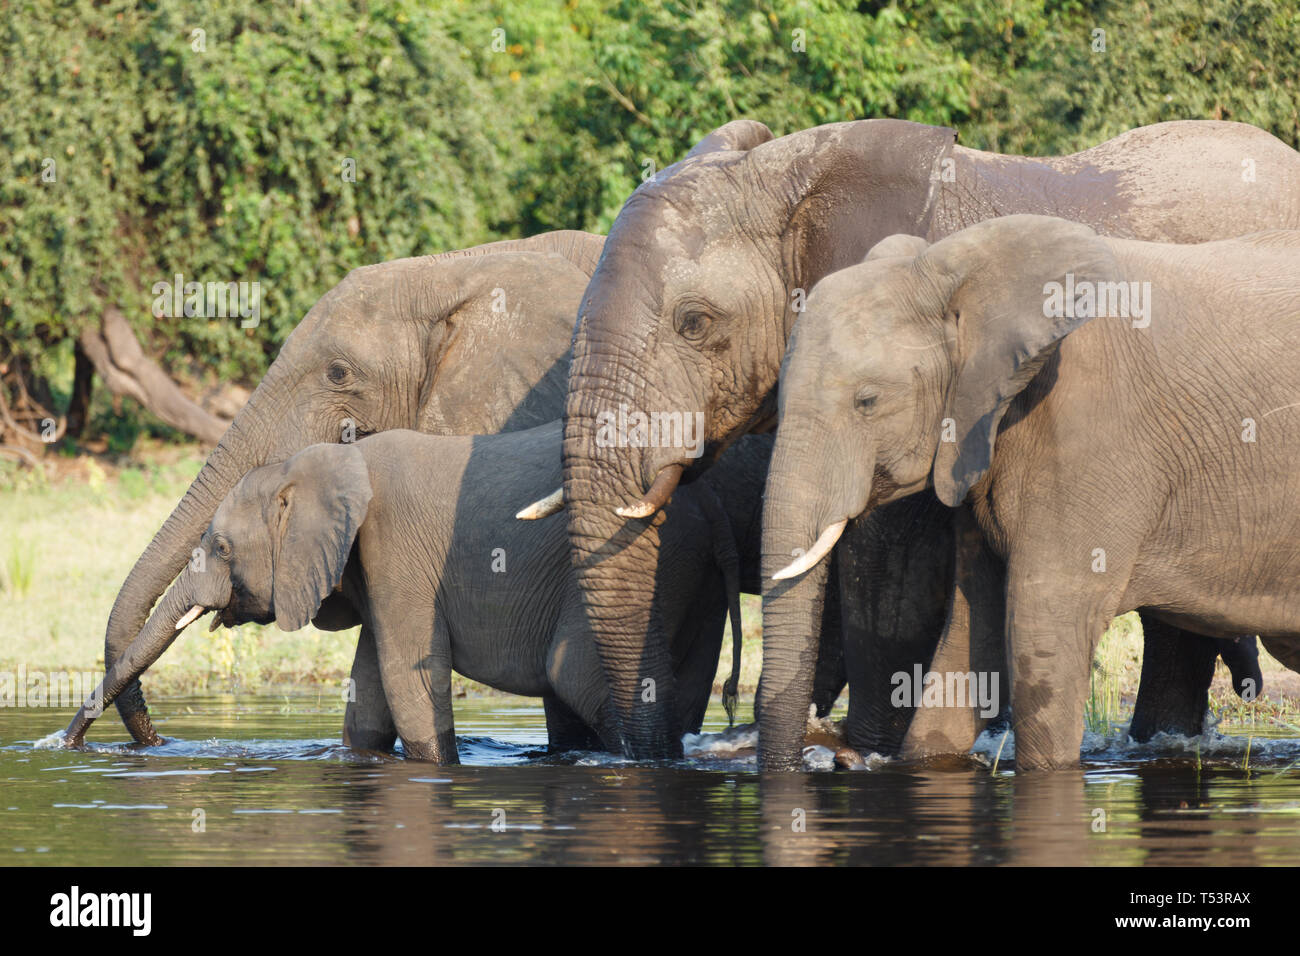 Primo piano di 4 elefanti,Loxodonta africana, compresi la madre e il bambino, nel fiume di acqua potabile e di balneazione Foto Stock